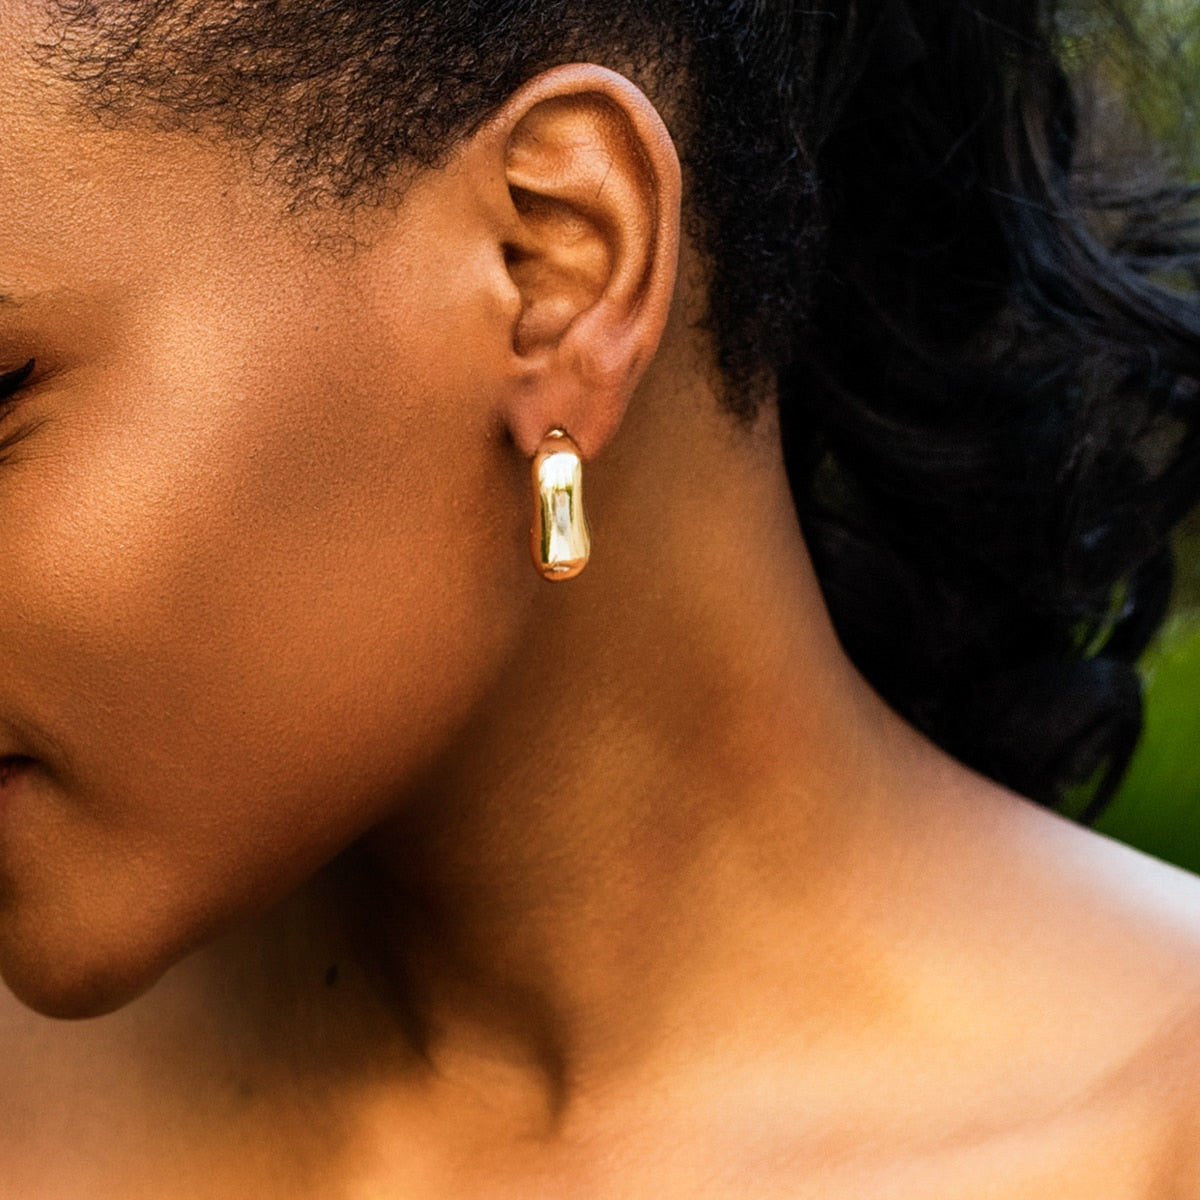 Maytrends Punk Metal Geometry Half Square Earrings Minimalist Aesthetics Gold Color Drop Earrings Trendy Women's Jewelry